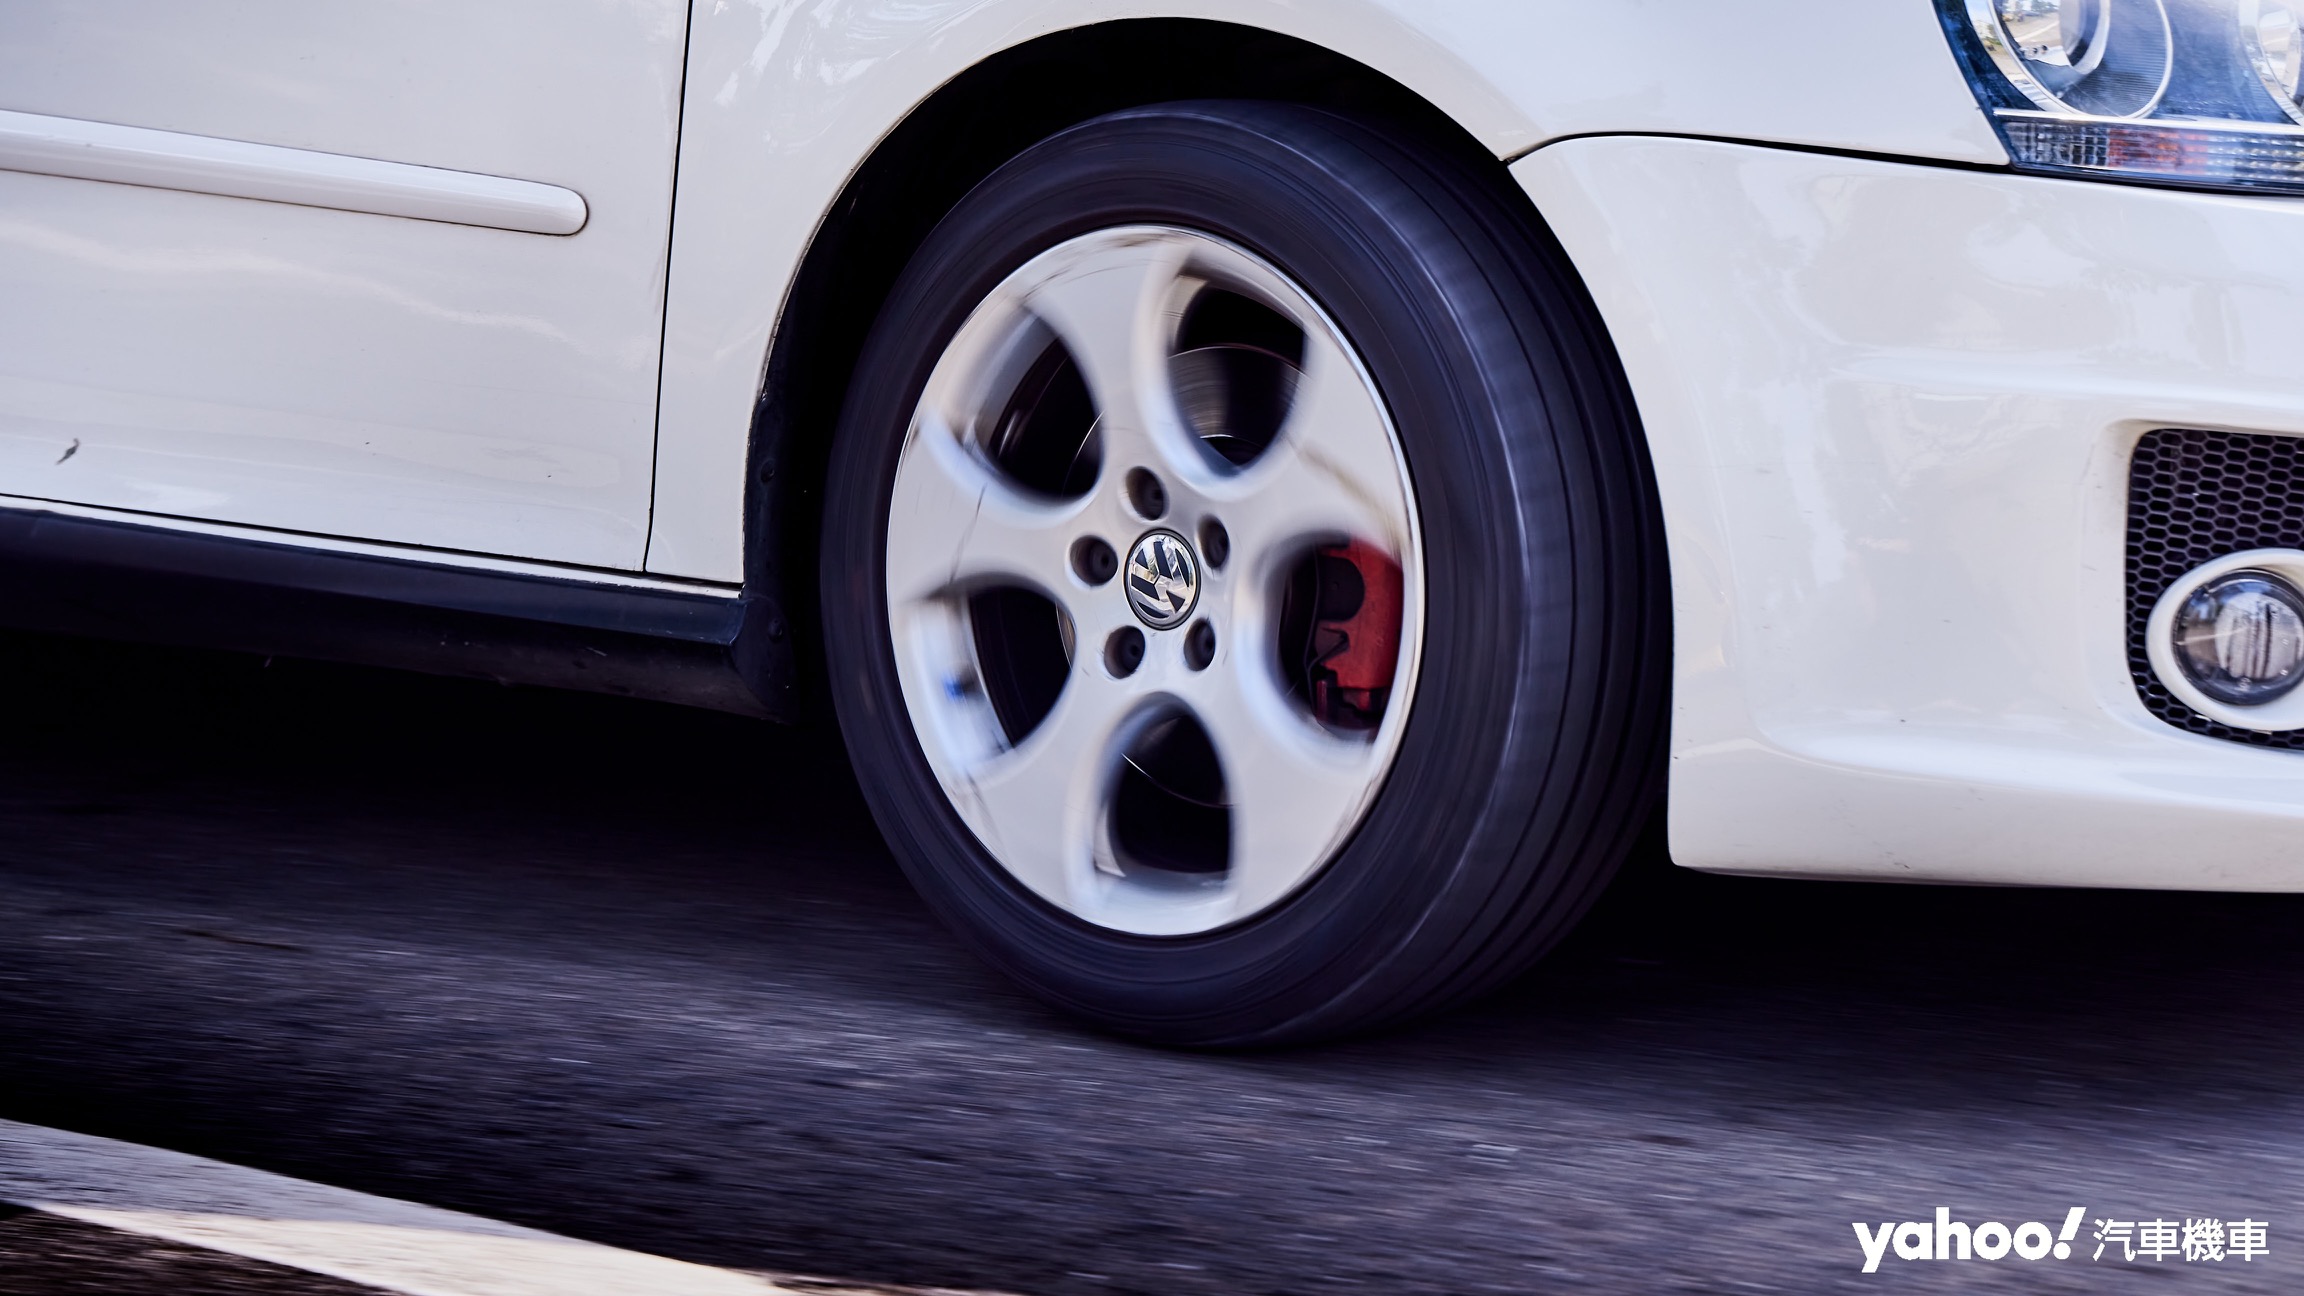 在快節奏駕駛中可清楚感受到Falken FK510適中的胎壁支撐性帶來相當不錯的輪胎指向，山路連續彎或者高快速道路的高速車道變換都能展現輪胎良好的操控性。